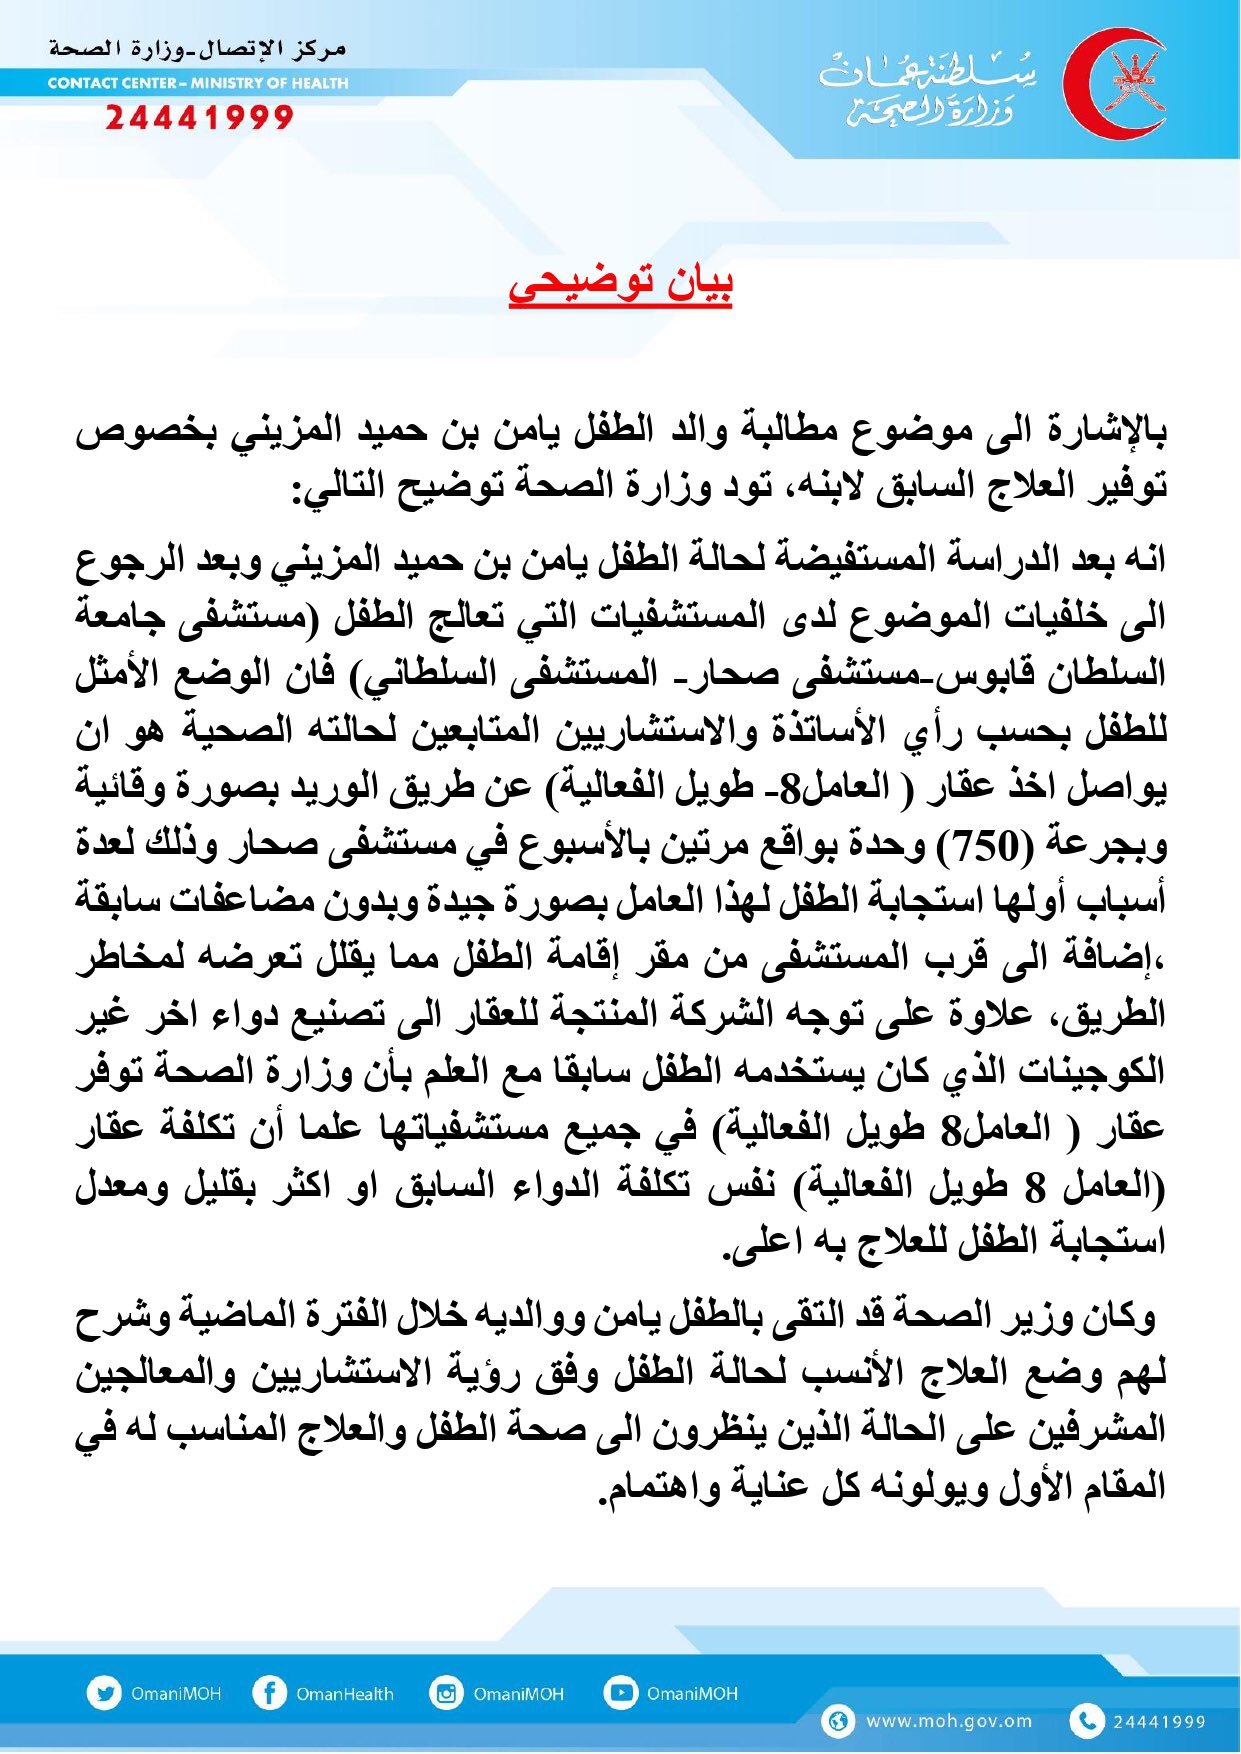 وزارة الصحة تصدر بيان توضيحي حول توفير العلاج للطفل "يامن"